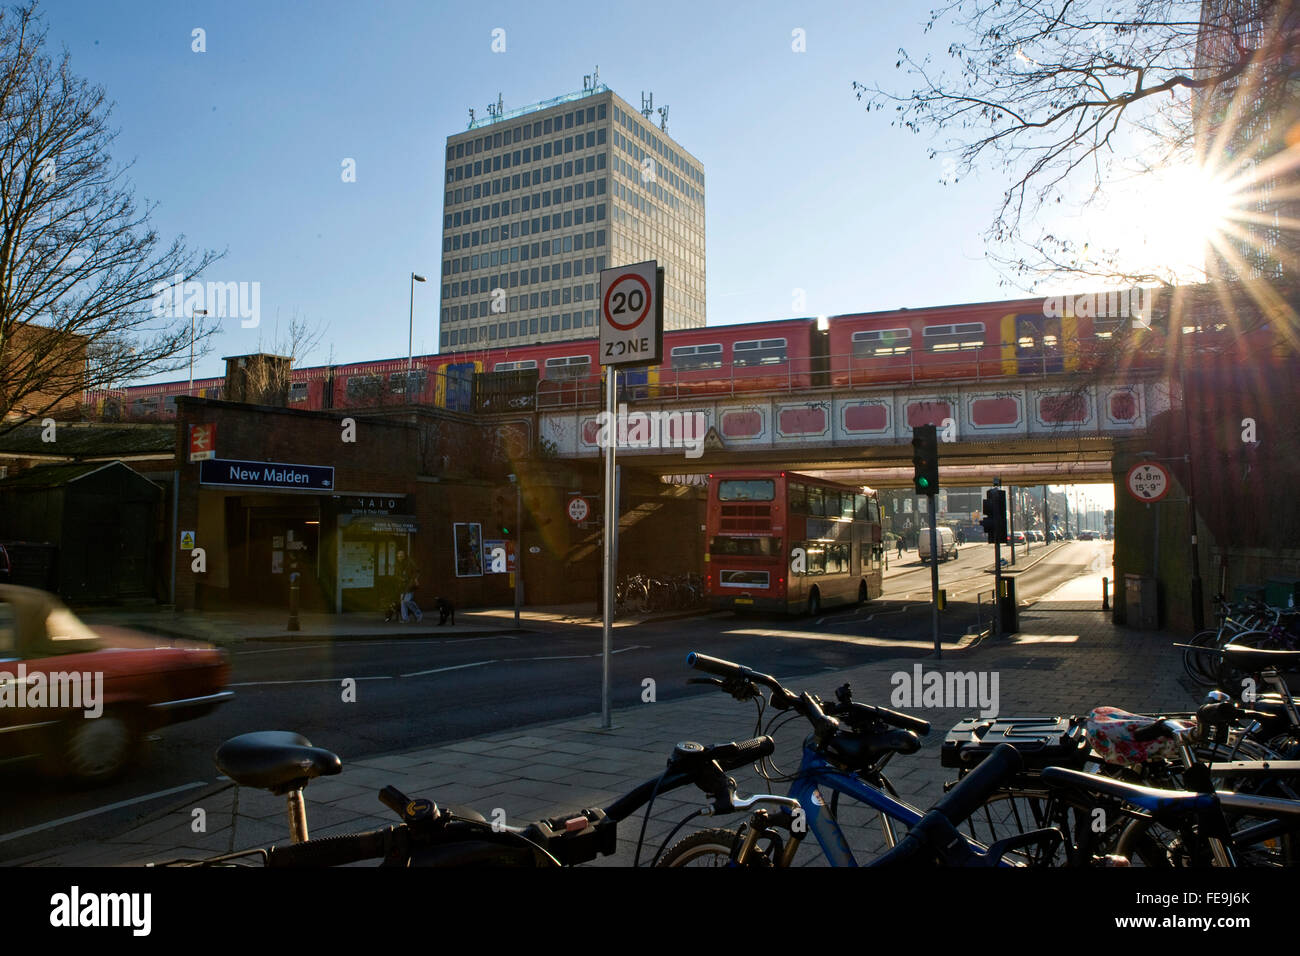 New Malden stazione ferroviaria con noleggio biciclette, auto, treno e autobus Foto Stock